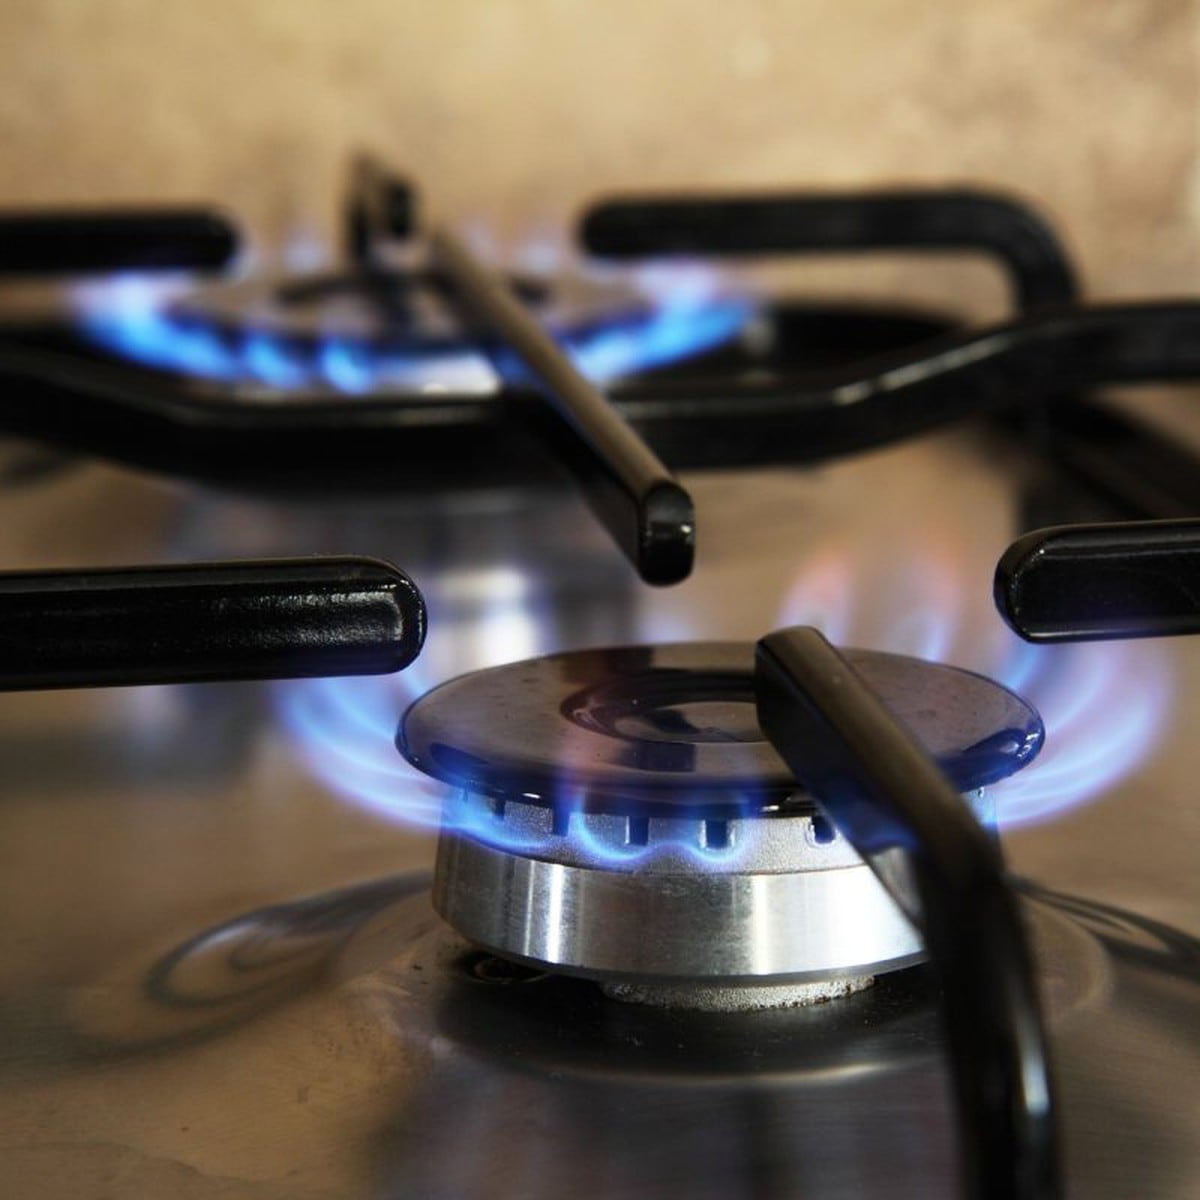 Quemadores de gas en llamas en la estufa de la cocina doméstica